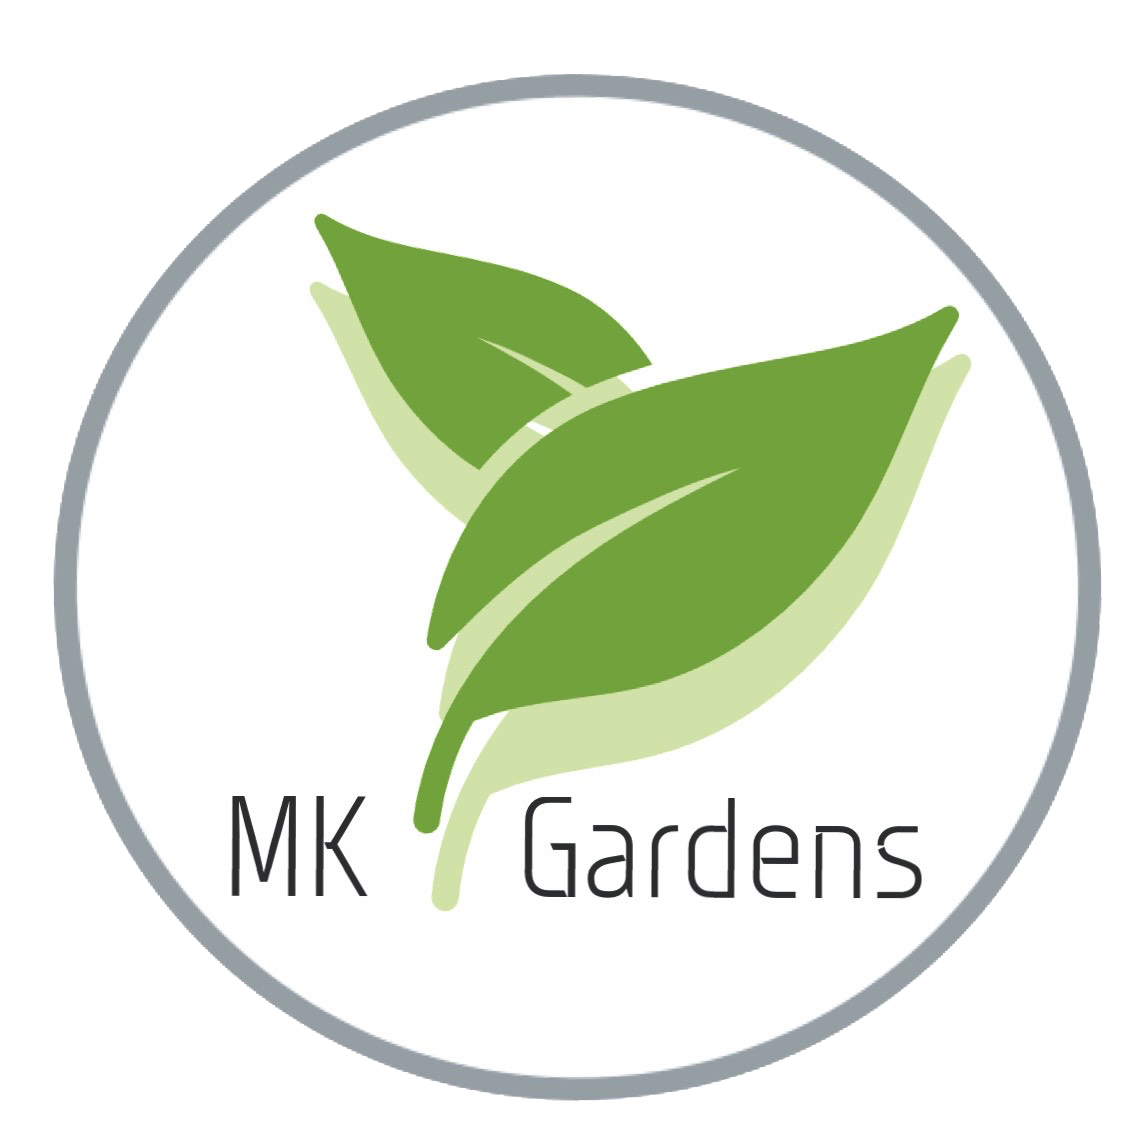 MK Gardens Ballarat landscape design services